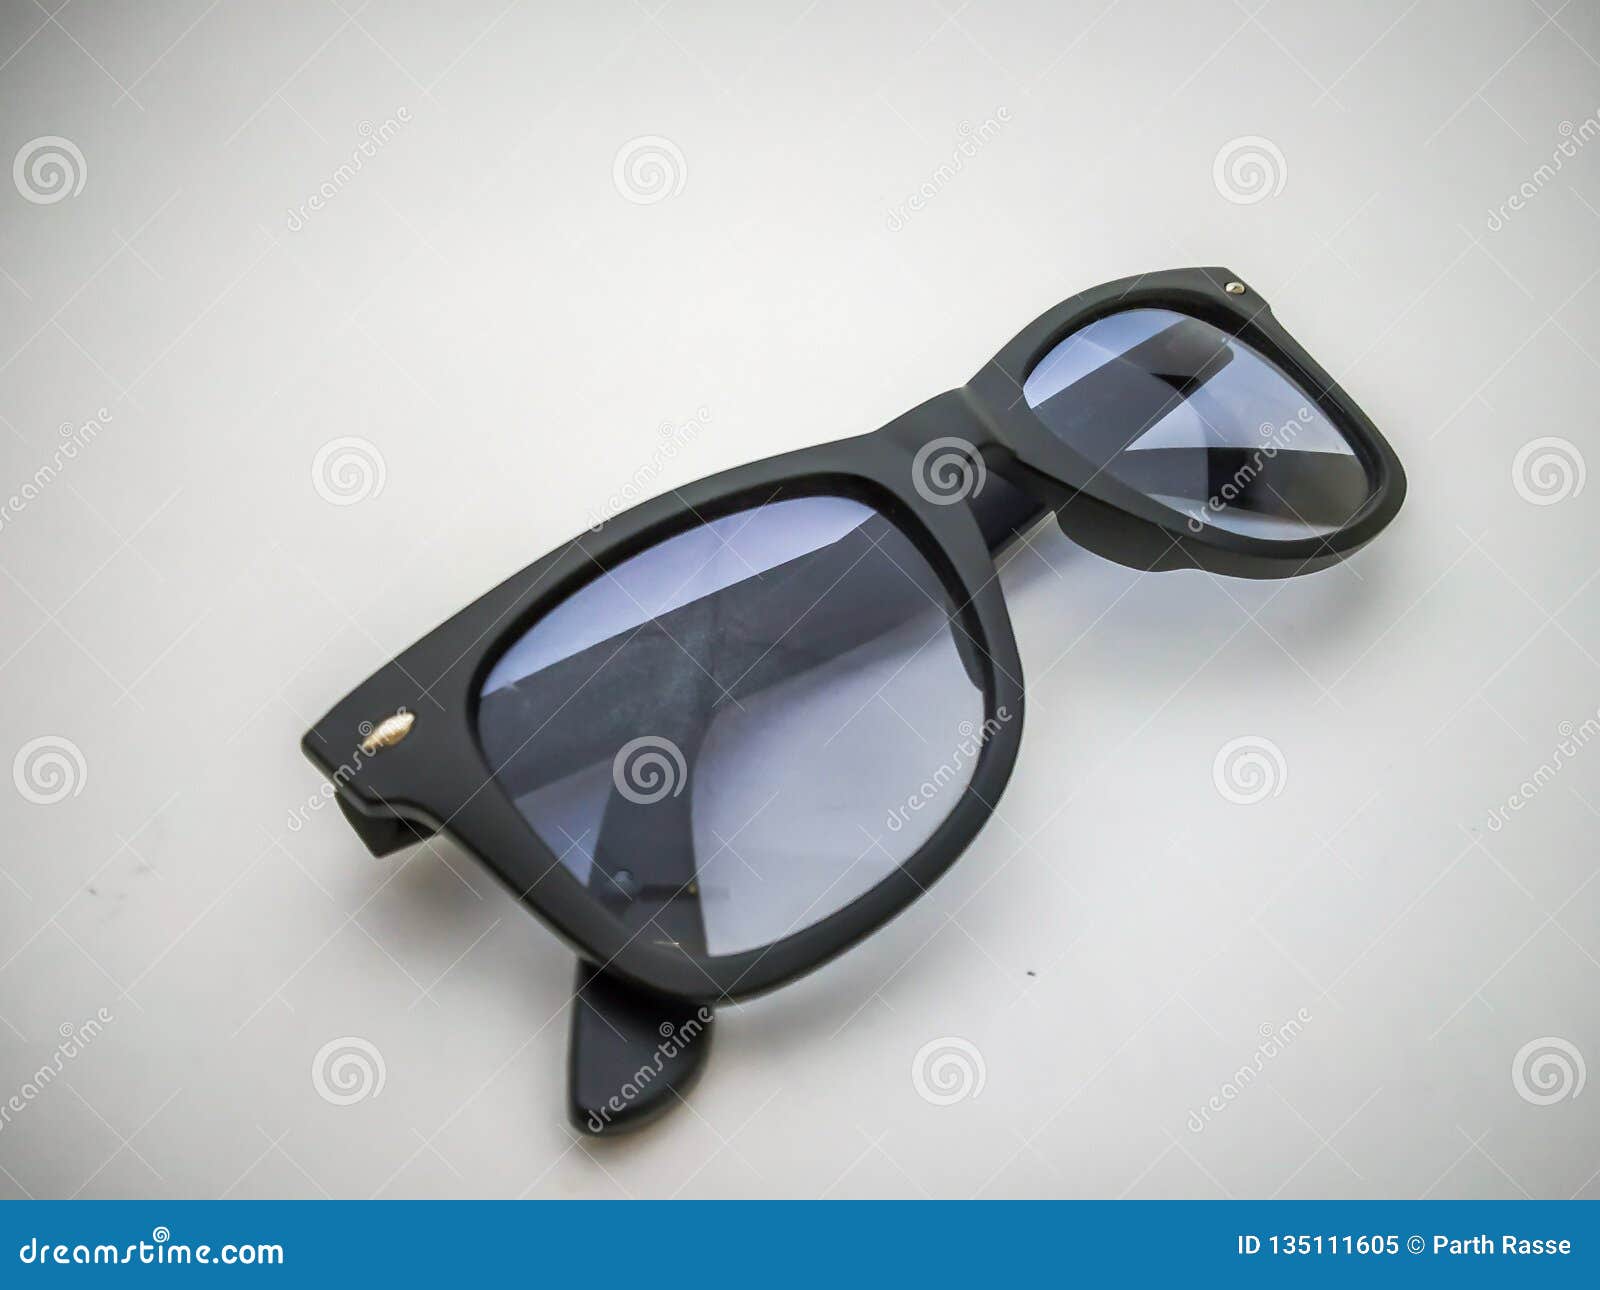 navy blue wayfarer sunglasses